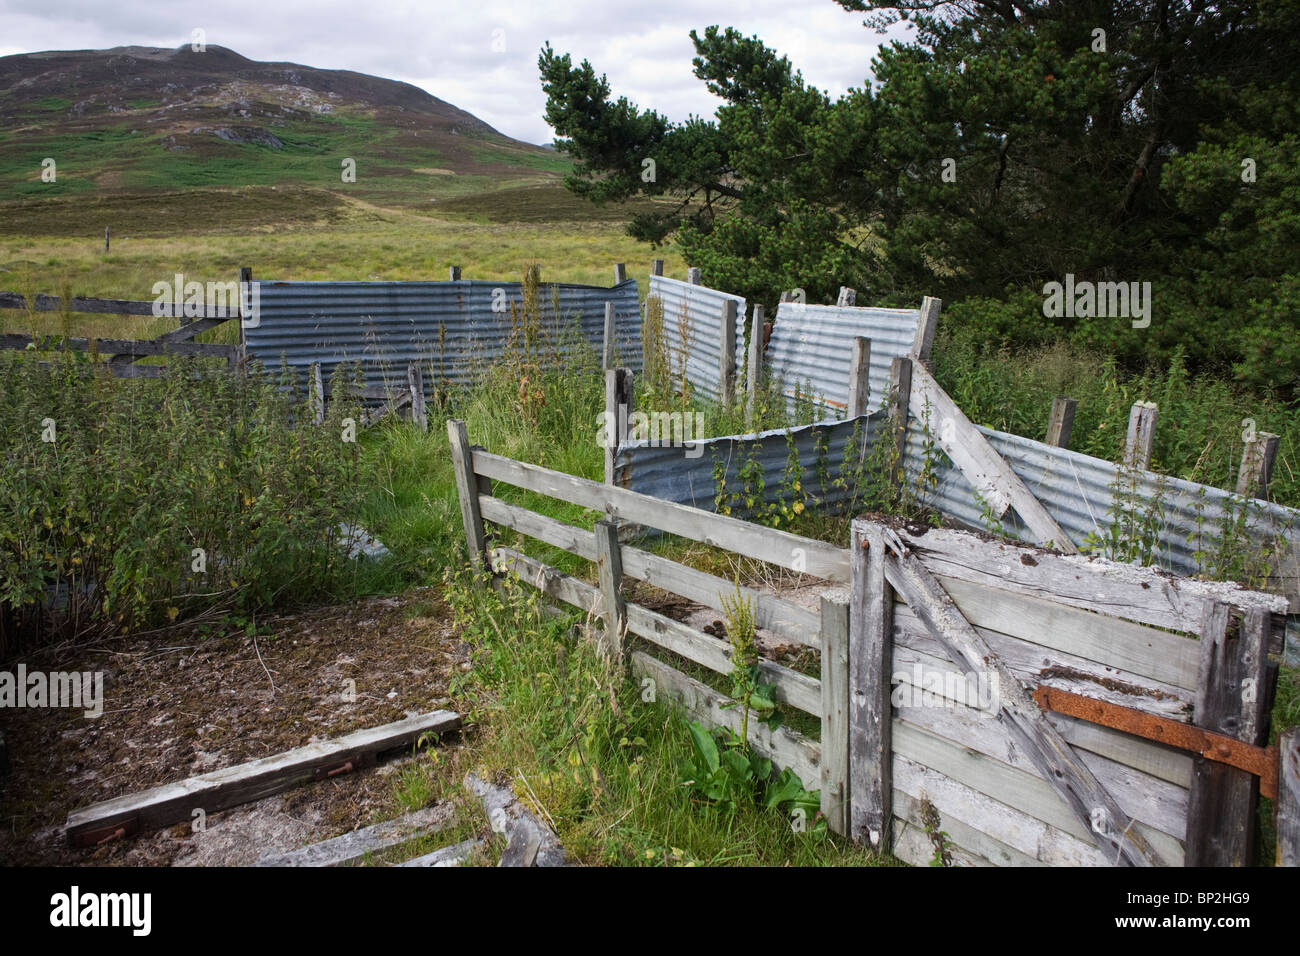 Tôles ondulées rouillées abandonnées dans des enclos de ferme d'élevage dans la région de Glen Bauchor, Newtonmore, en Écosse. Banque D'Images